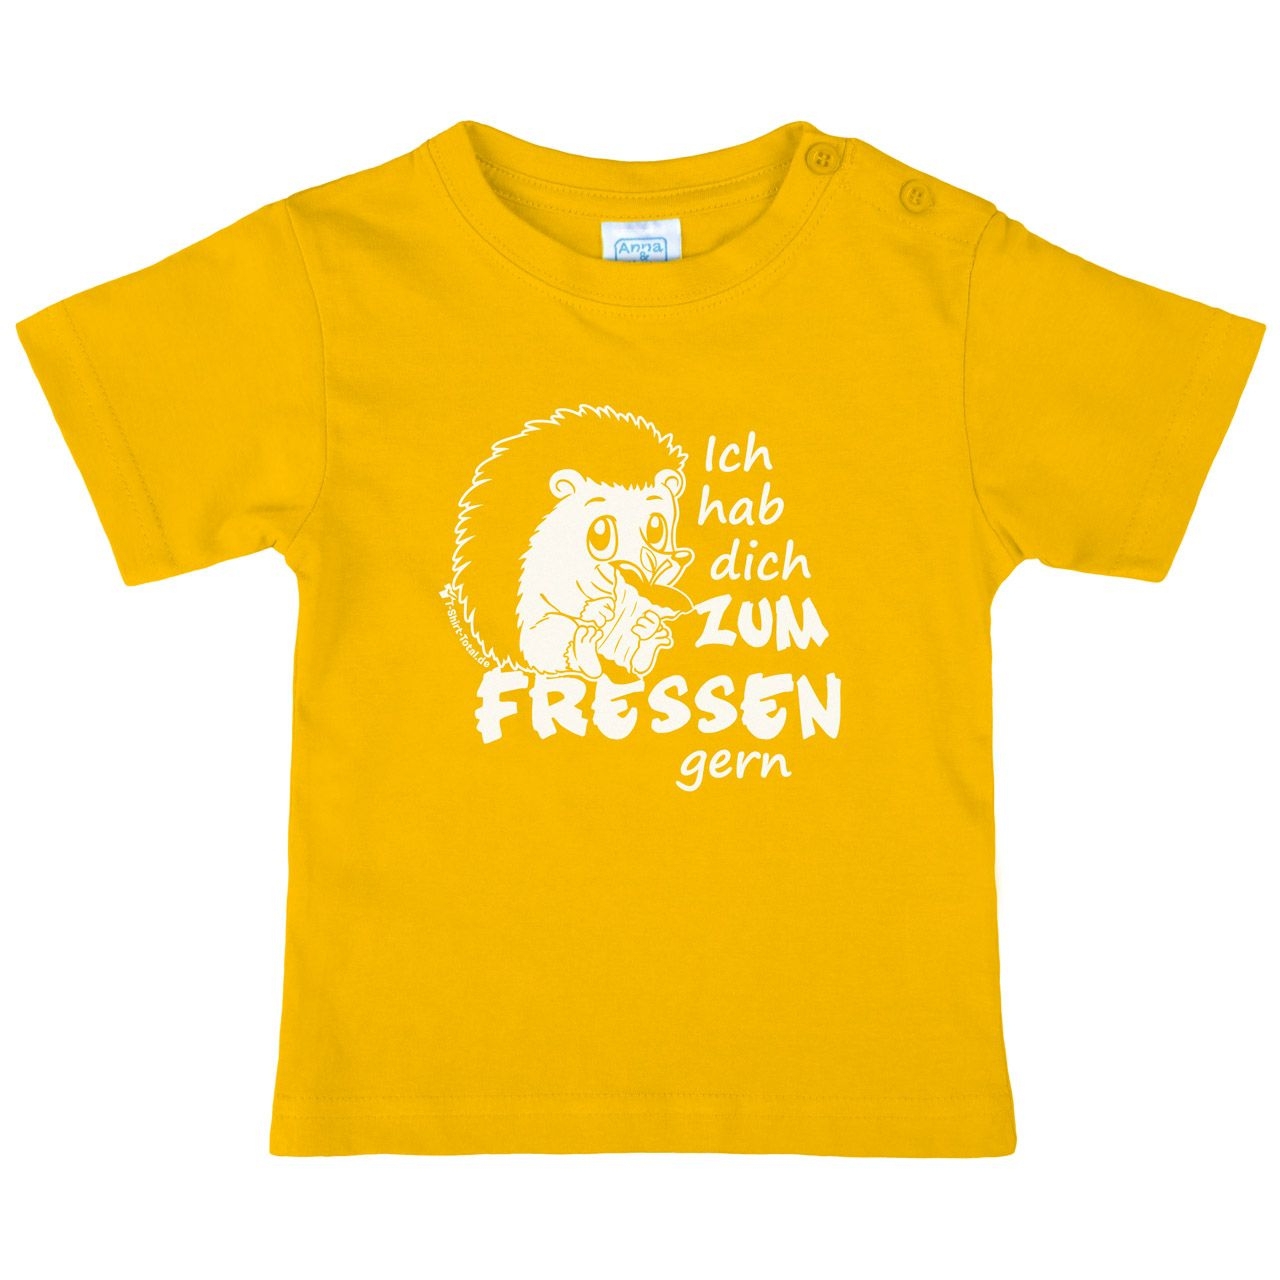 Zum fressen gern Kinder T-Shirt gelb 80 / 86